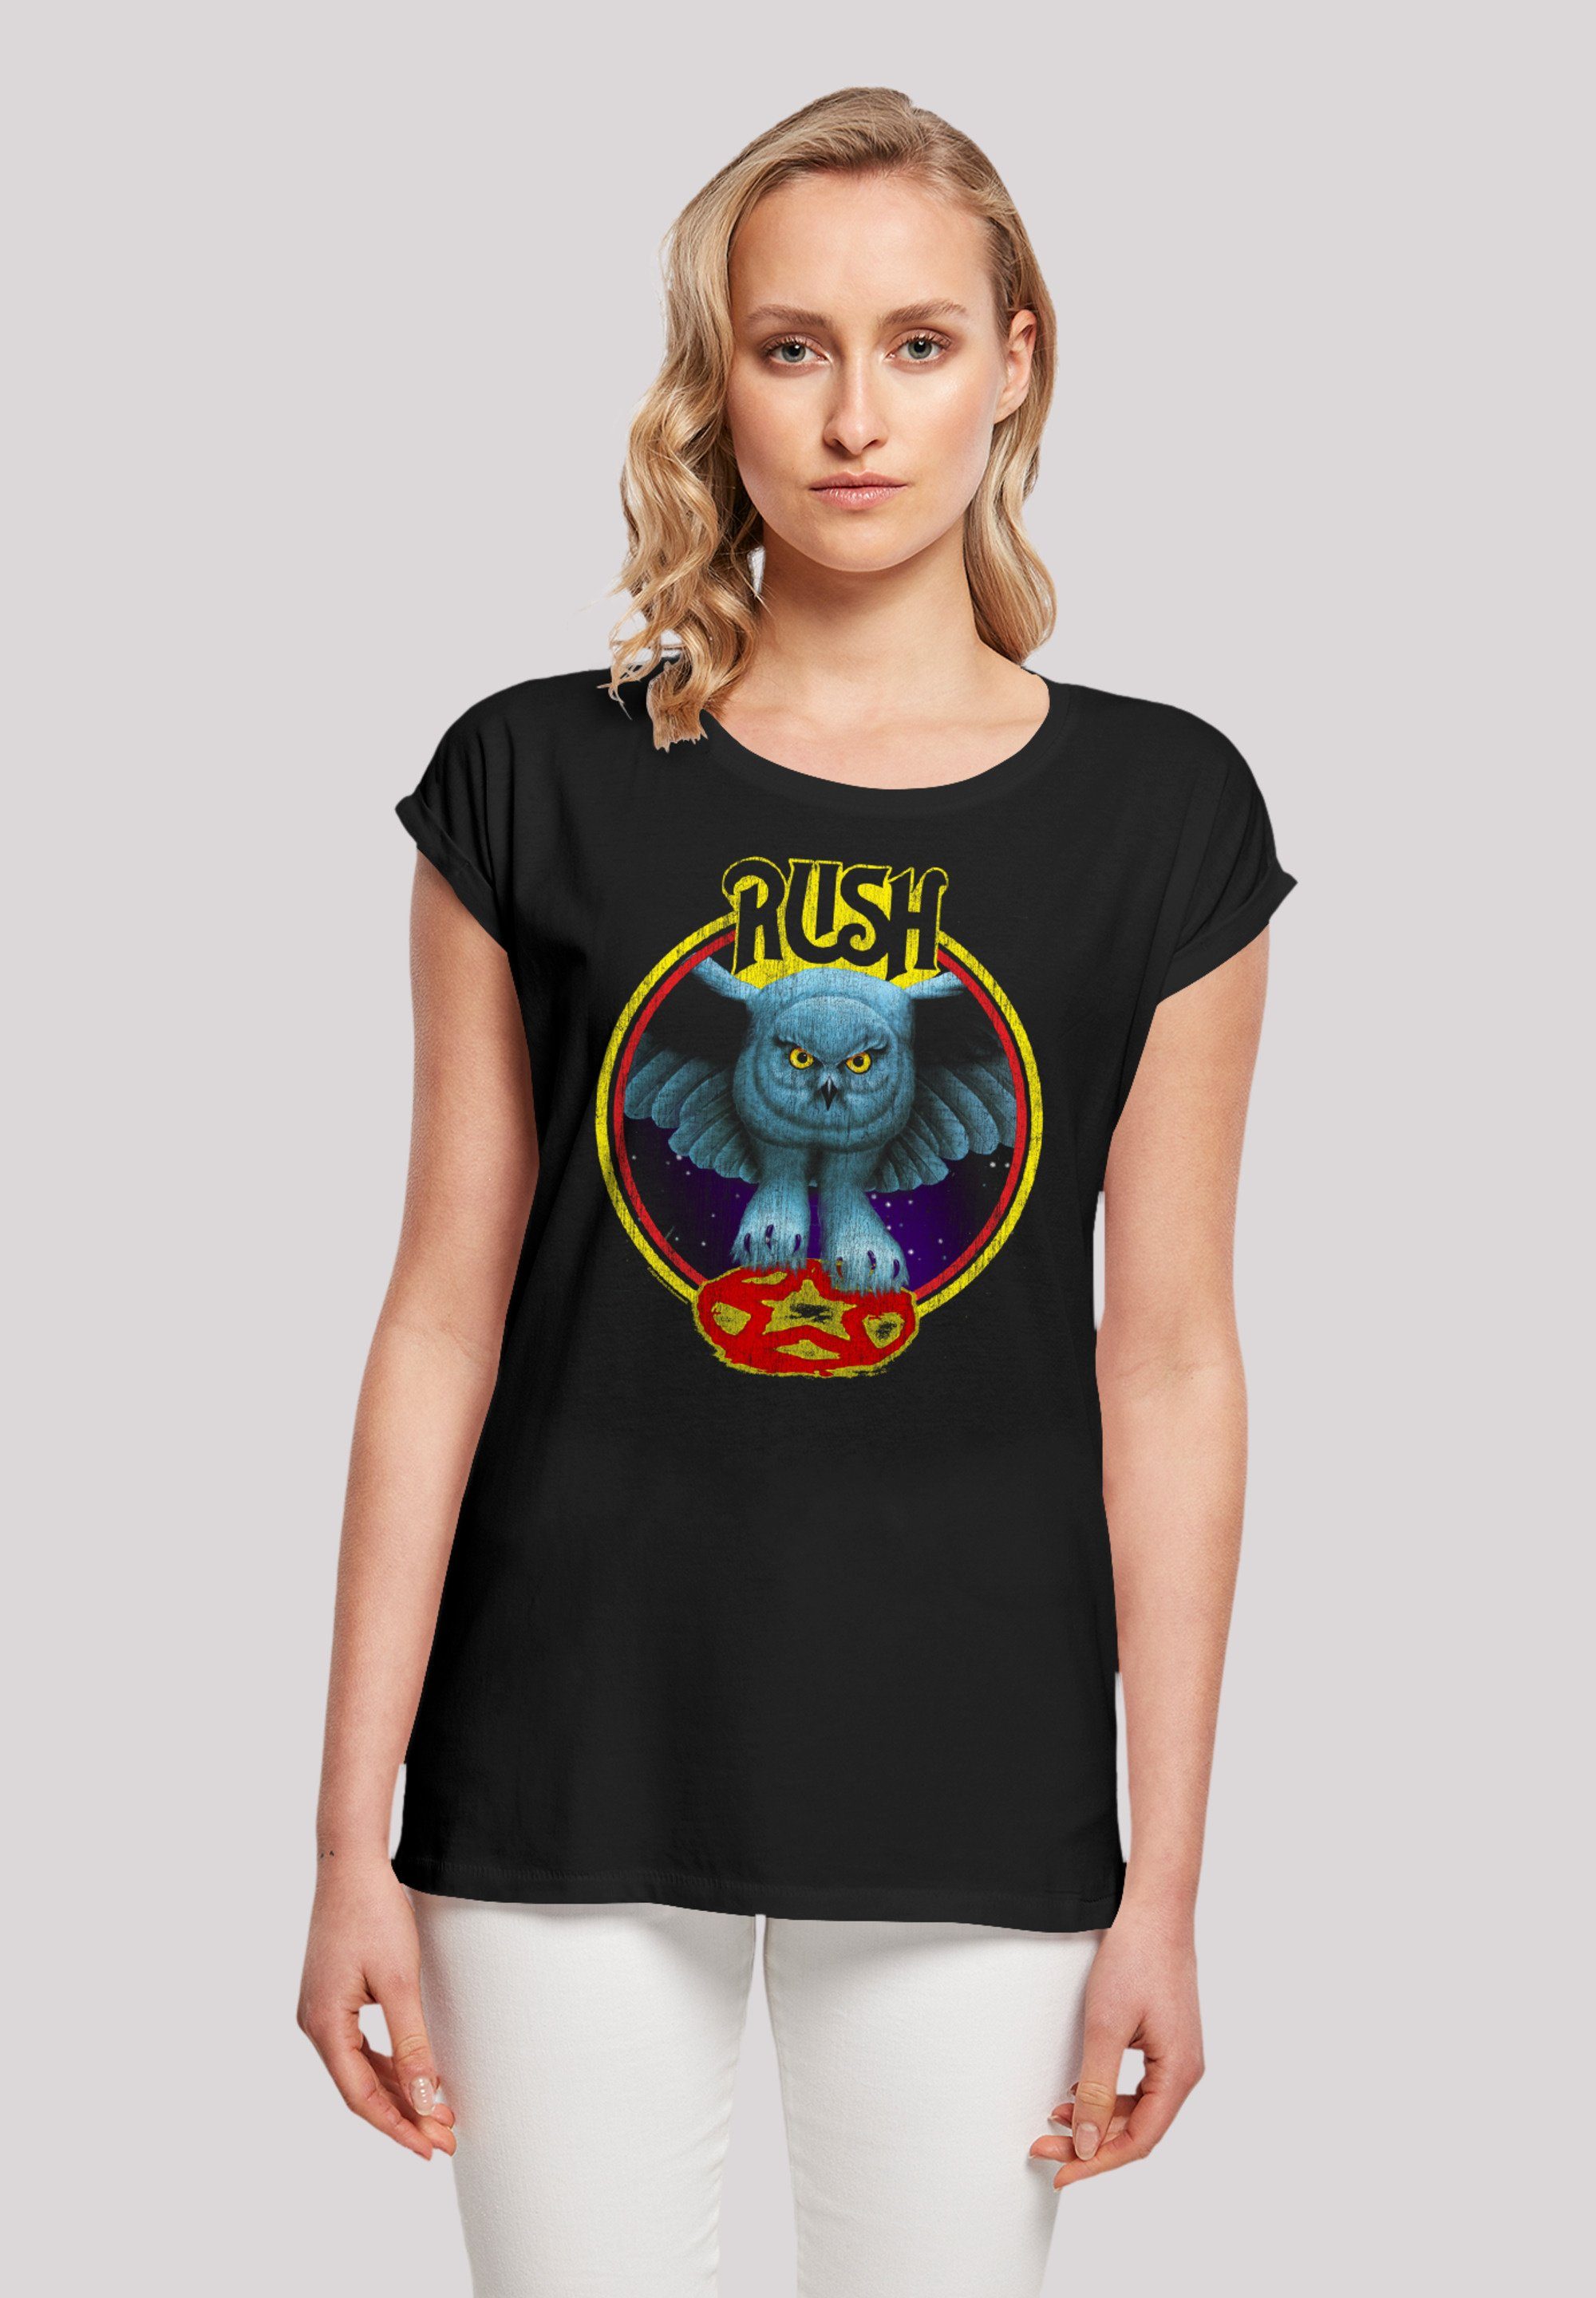 F4NT4STIC T-Shirt Rush Rock Fly Baumwollstoff Circle Band Premium Qualität, Tragekomfort hohem weicher By mit Sehr Night